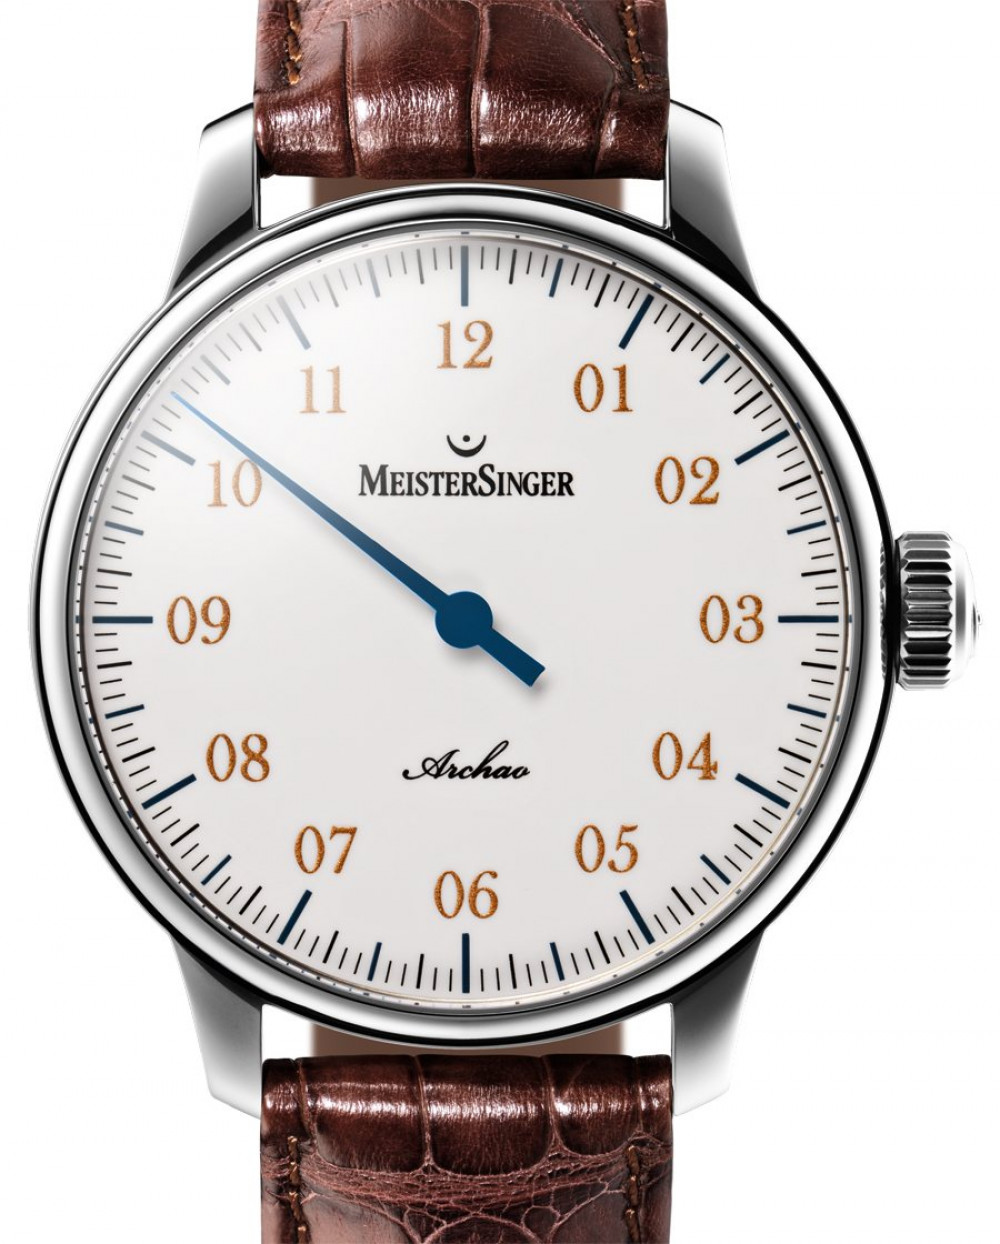 Zegarek firmy MeisterSinger, model Archao Edelstahl